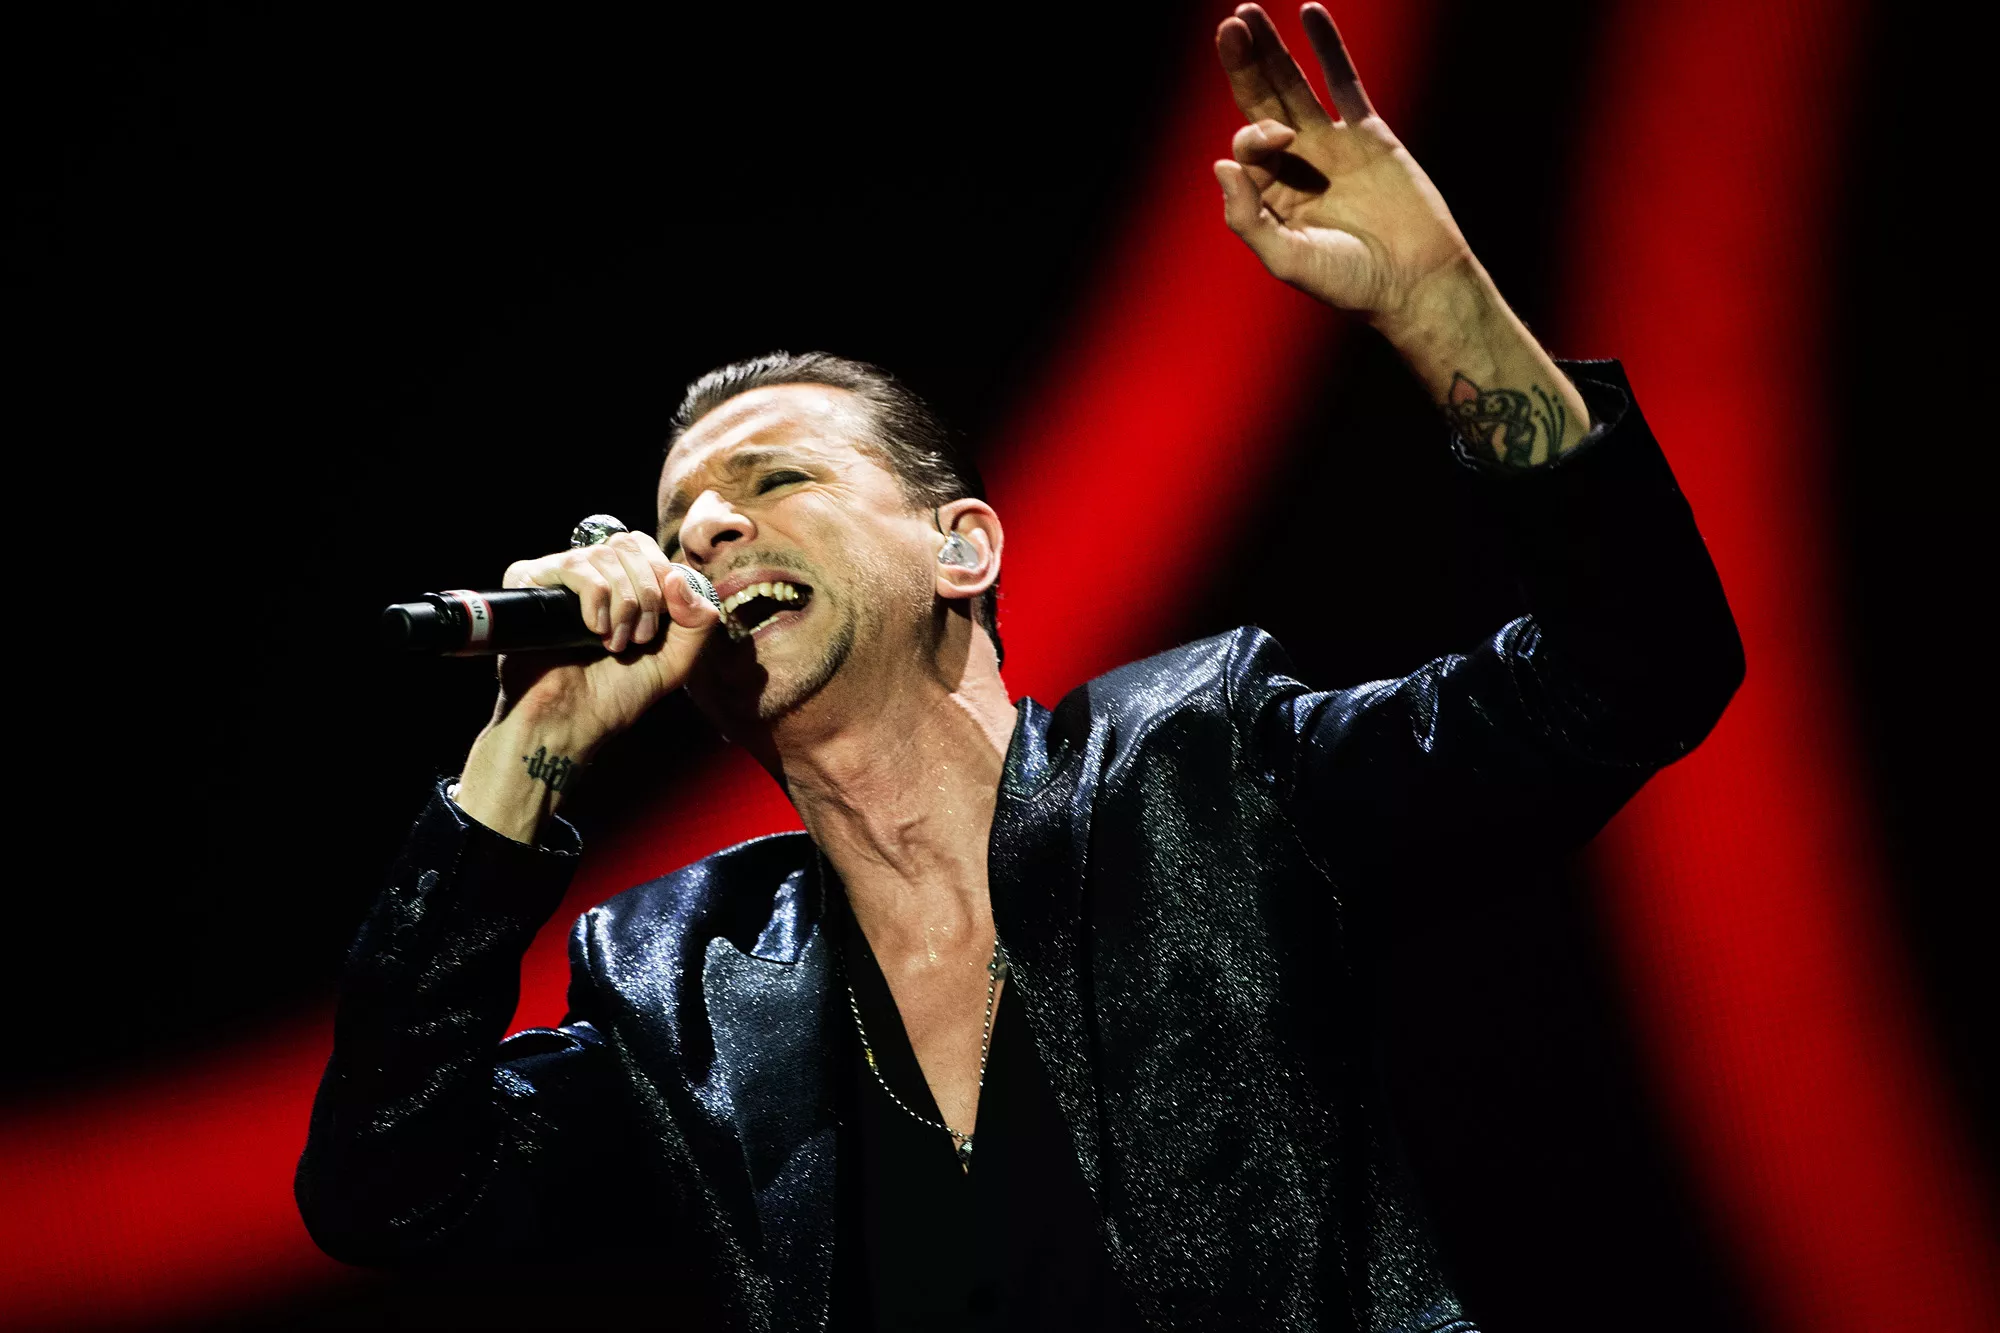 15 merkelige fakta om Depeche Mode